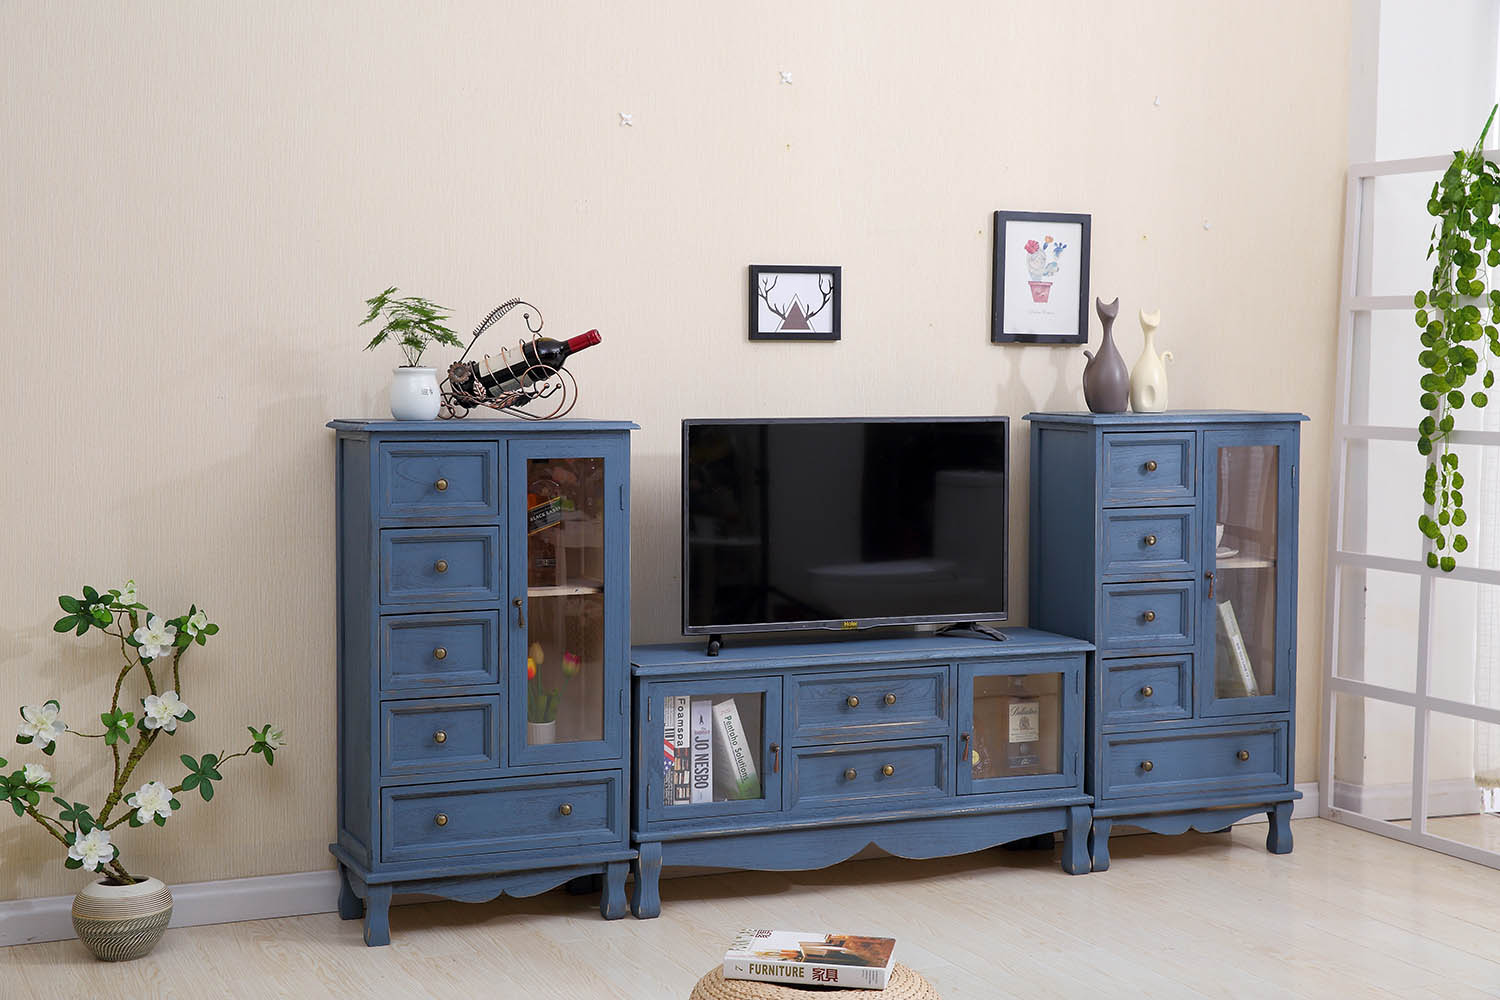 肃音电视柜电视柜 欧式复古经济型整装木质电视柜简约唯美客厅小户型